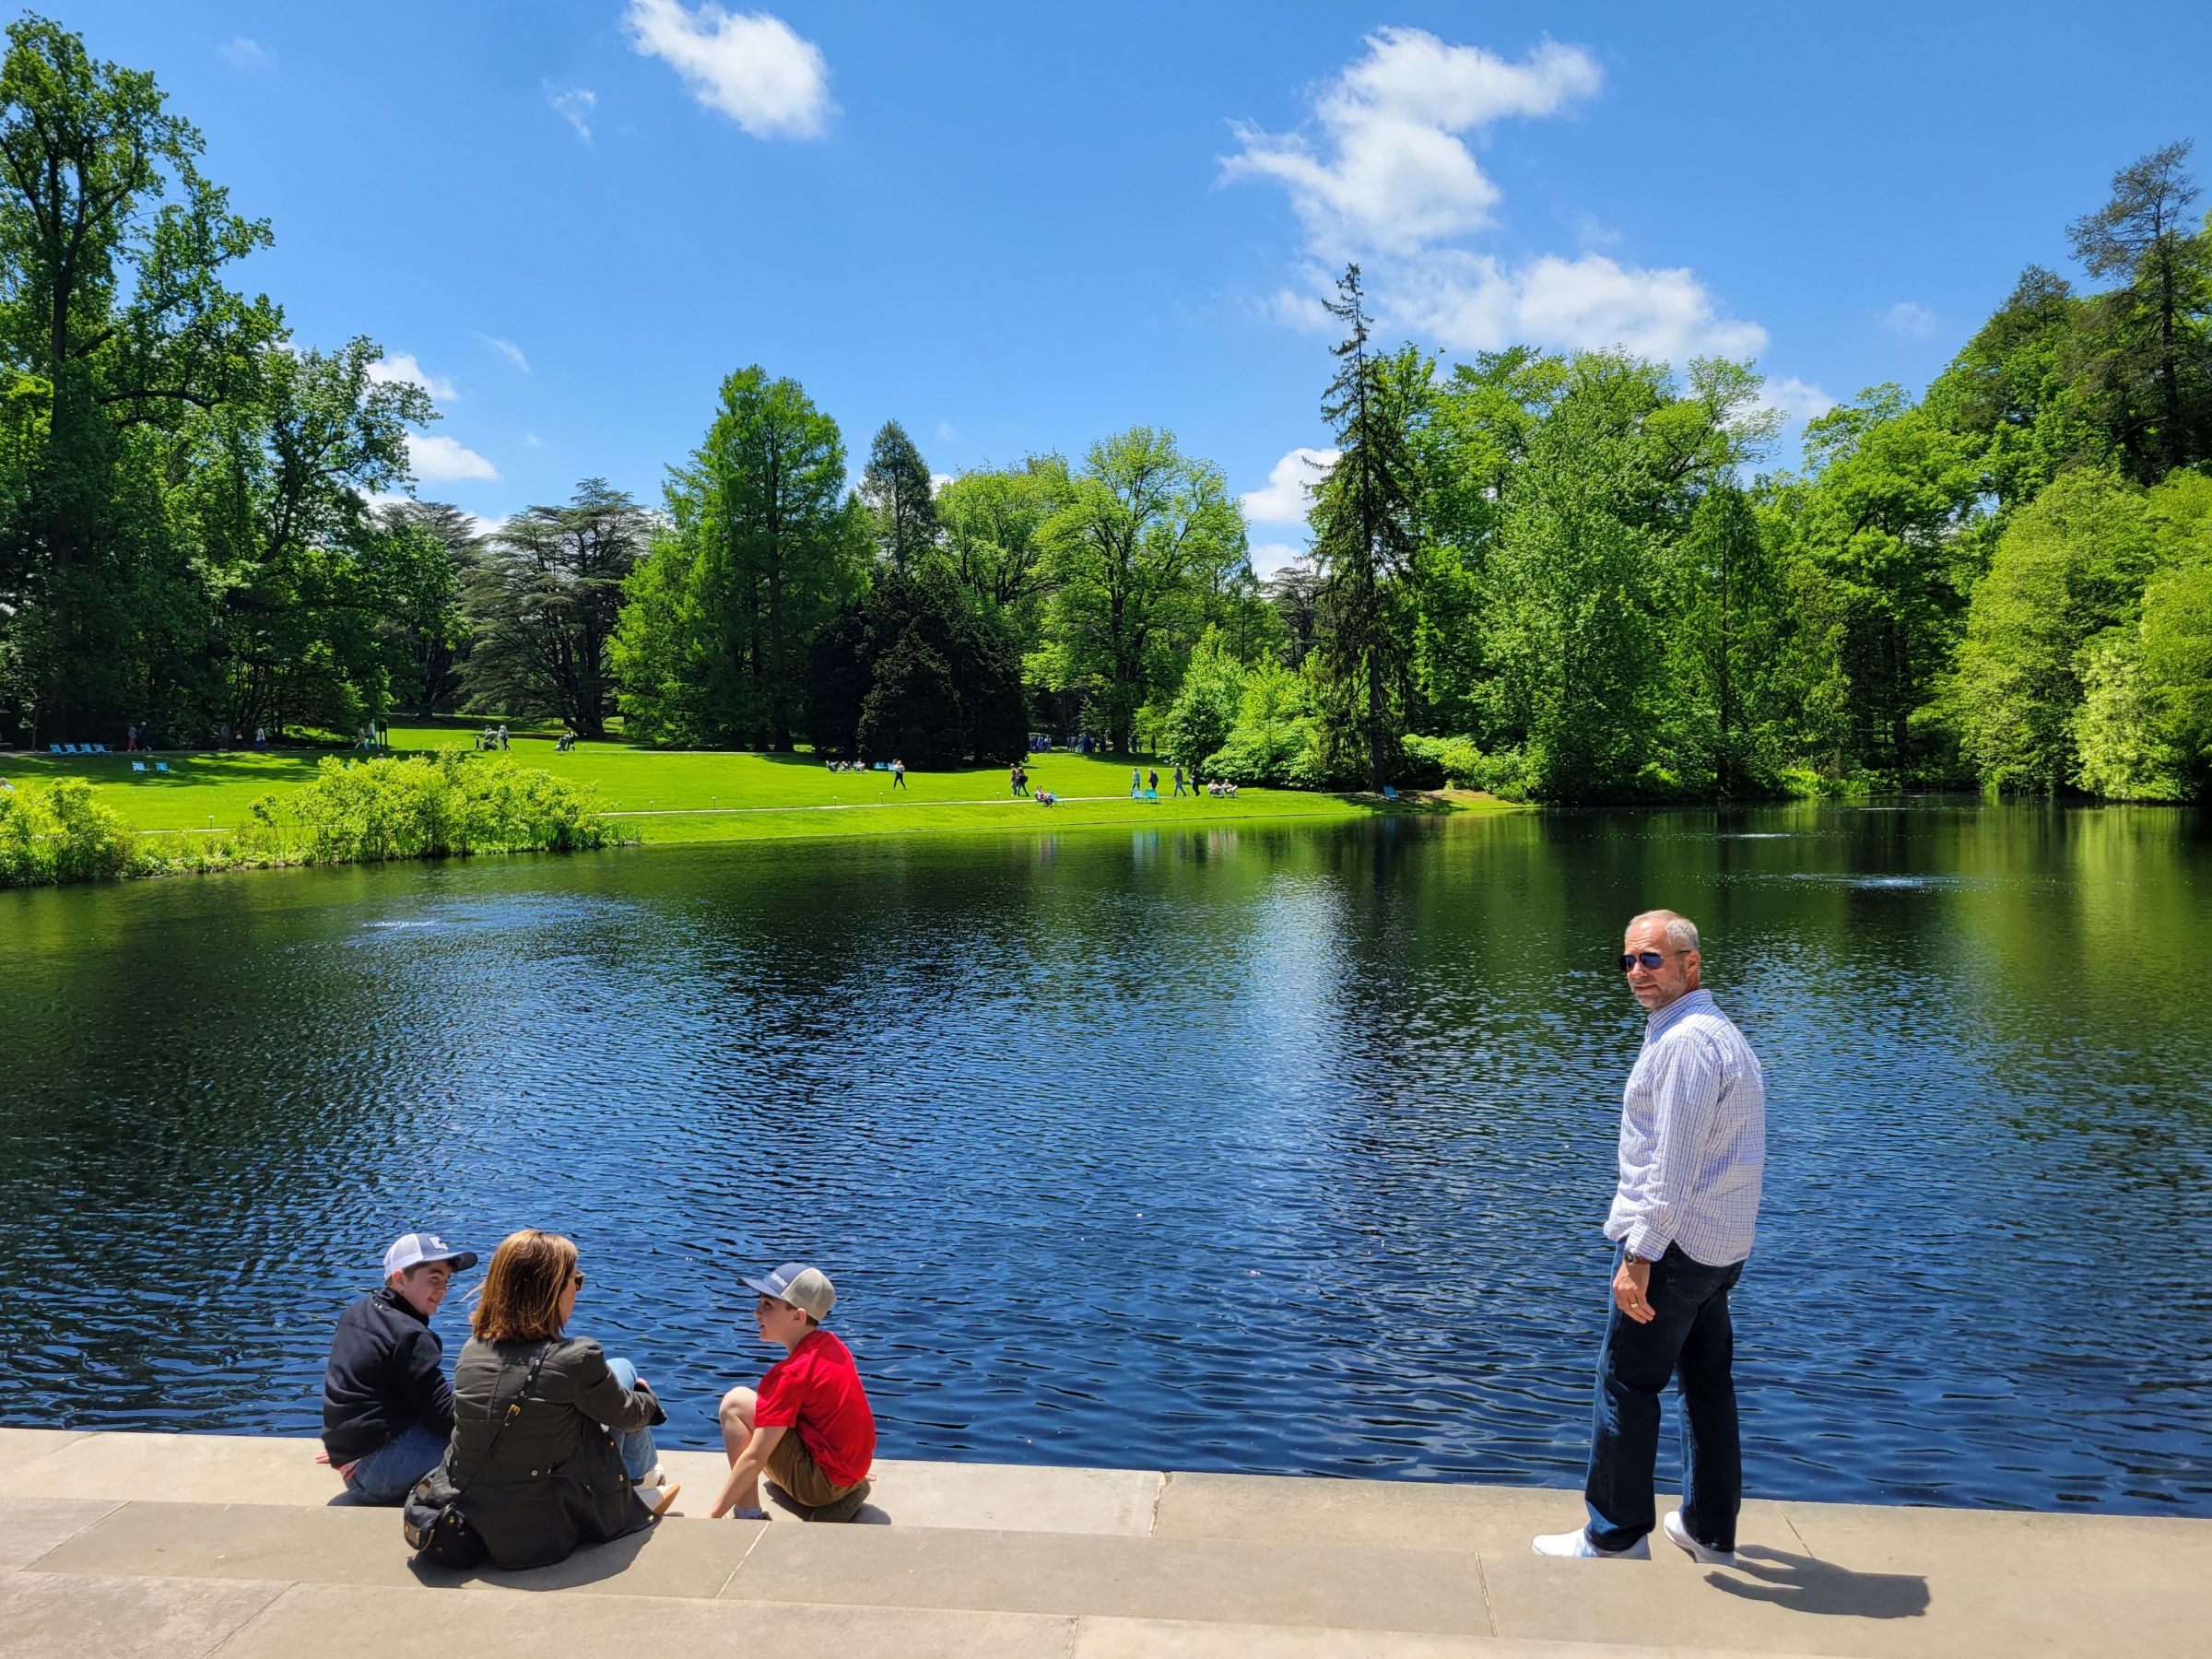 펜실베니아 필라델피아 인근에 미국의 가장 크고 유명한 사설 정원인 롱우드 가든(Longwood Gardens)